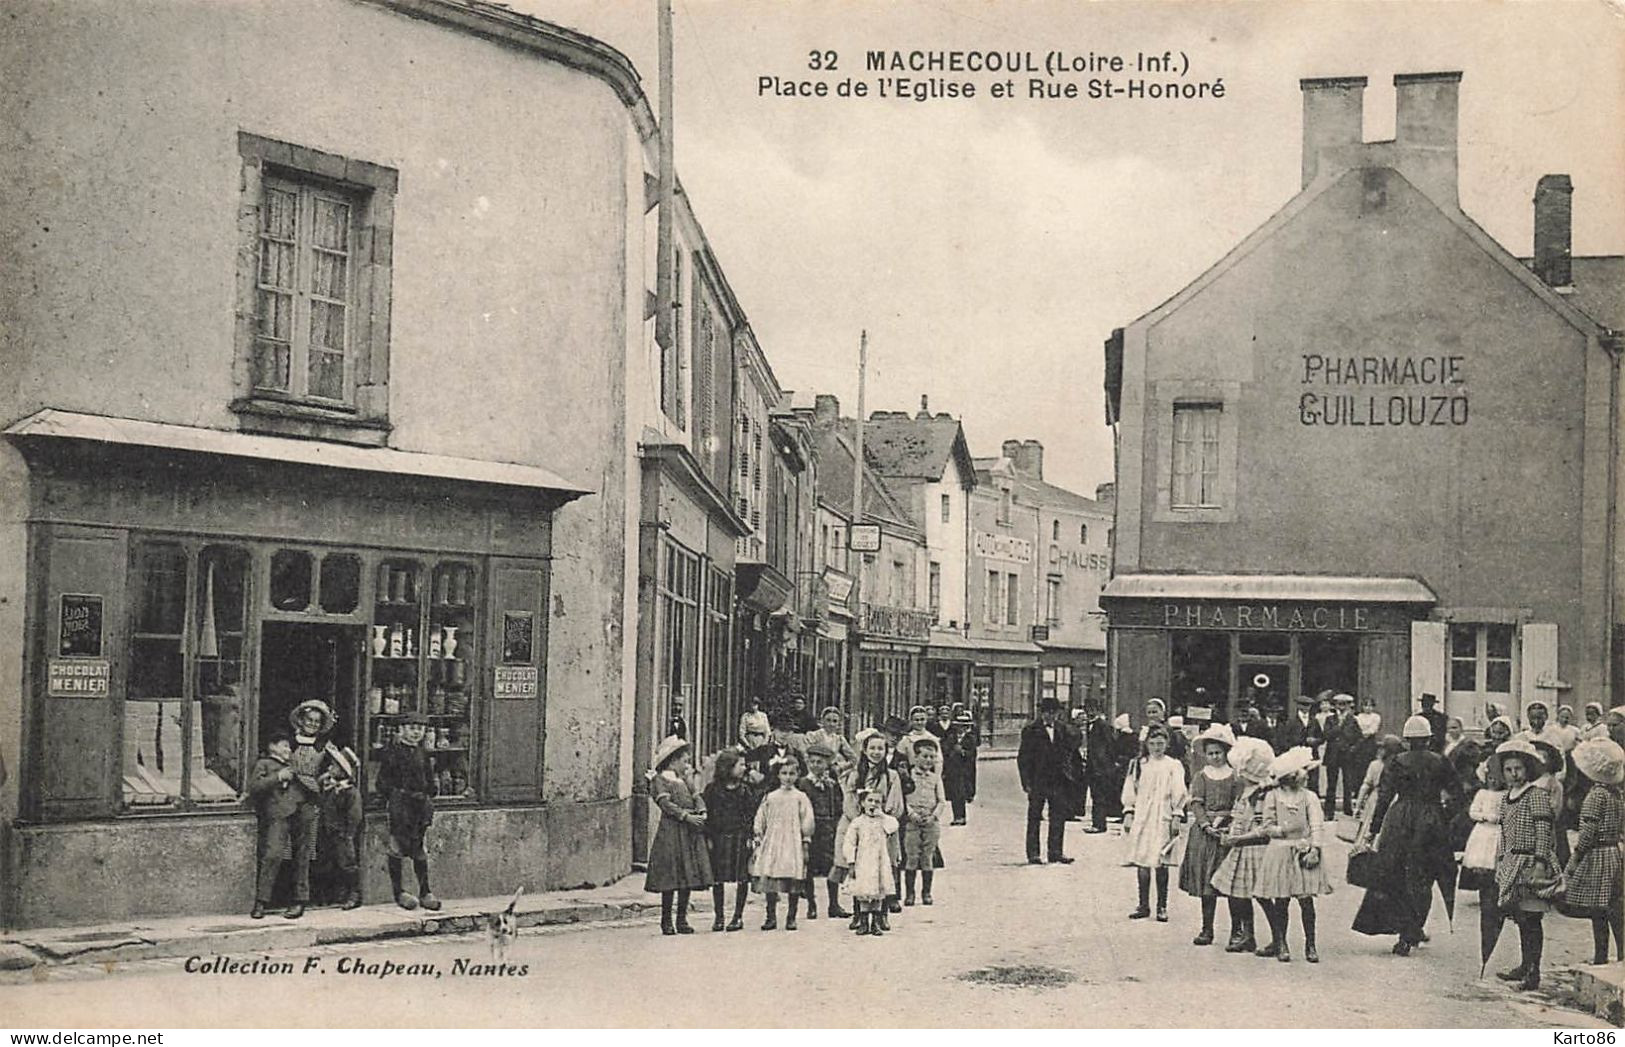 Machecoul * La Place De L'église Et Rue St Honoré * Pharmacie GUILLOUZO * épicerie * Villageois - Machecoul